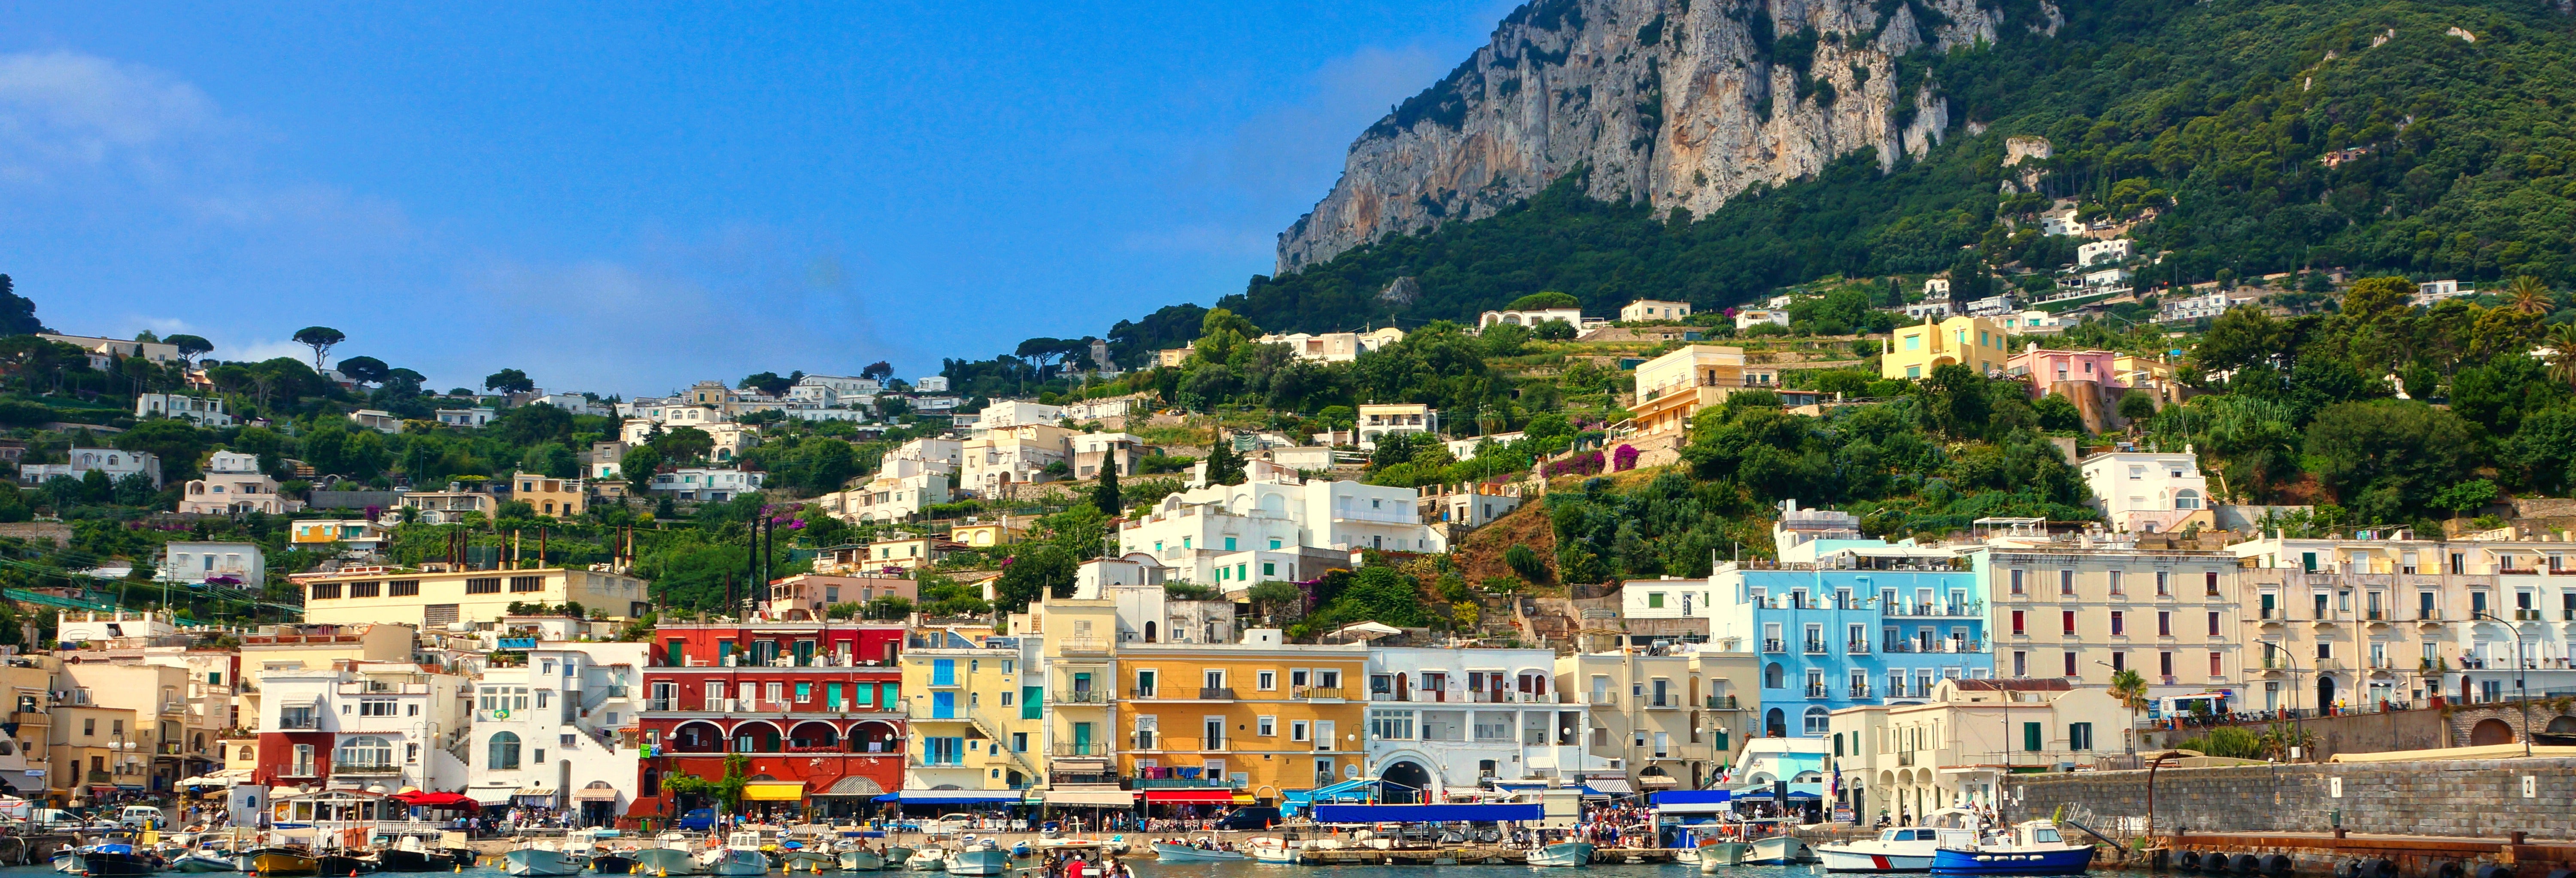 Excursão à ilha de Capri